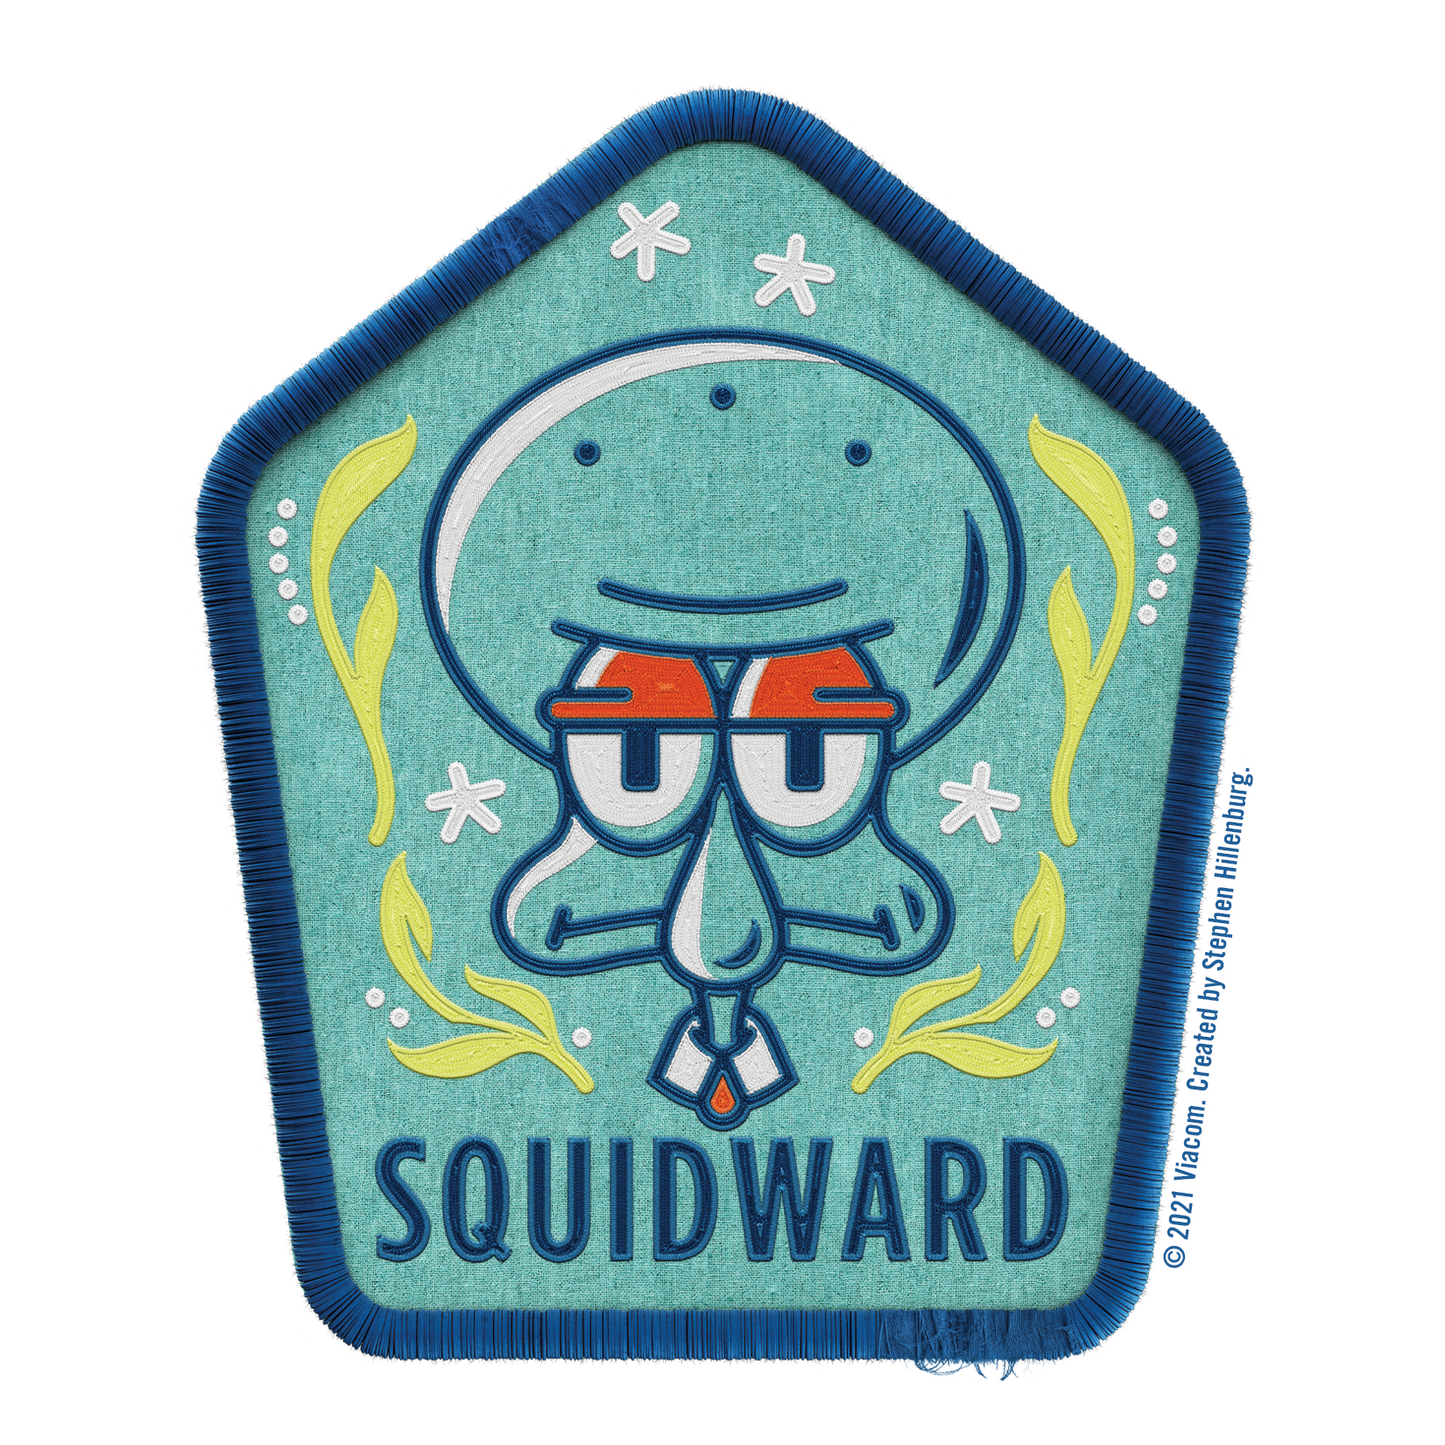 SpongeBob SquarePants Kamp Koral Character Badge Stickers Pack of 3